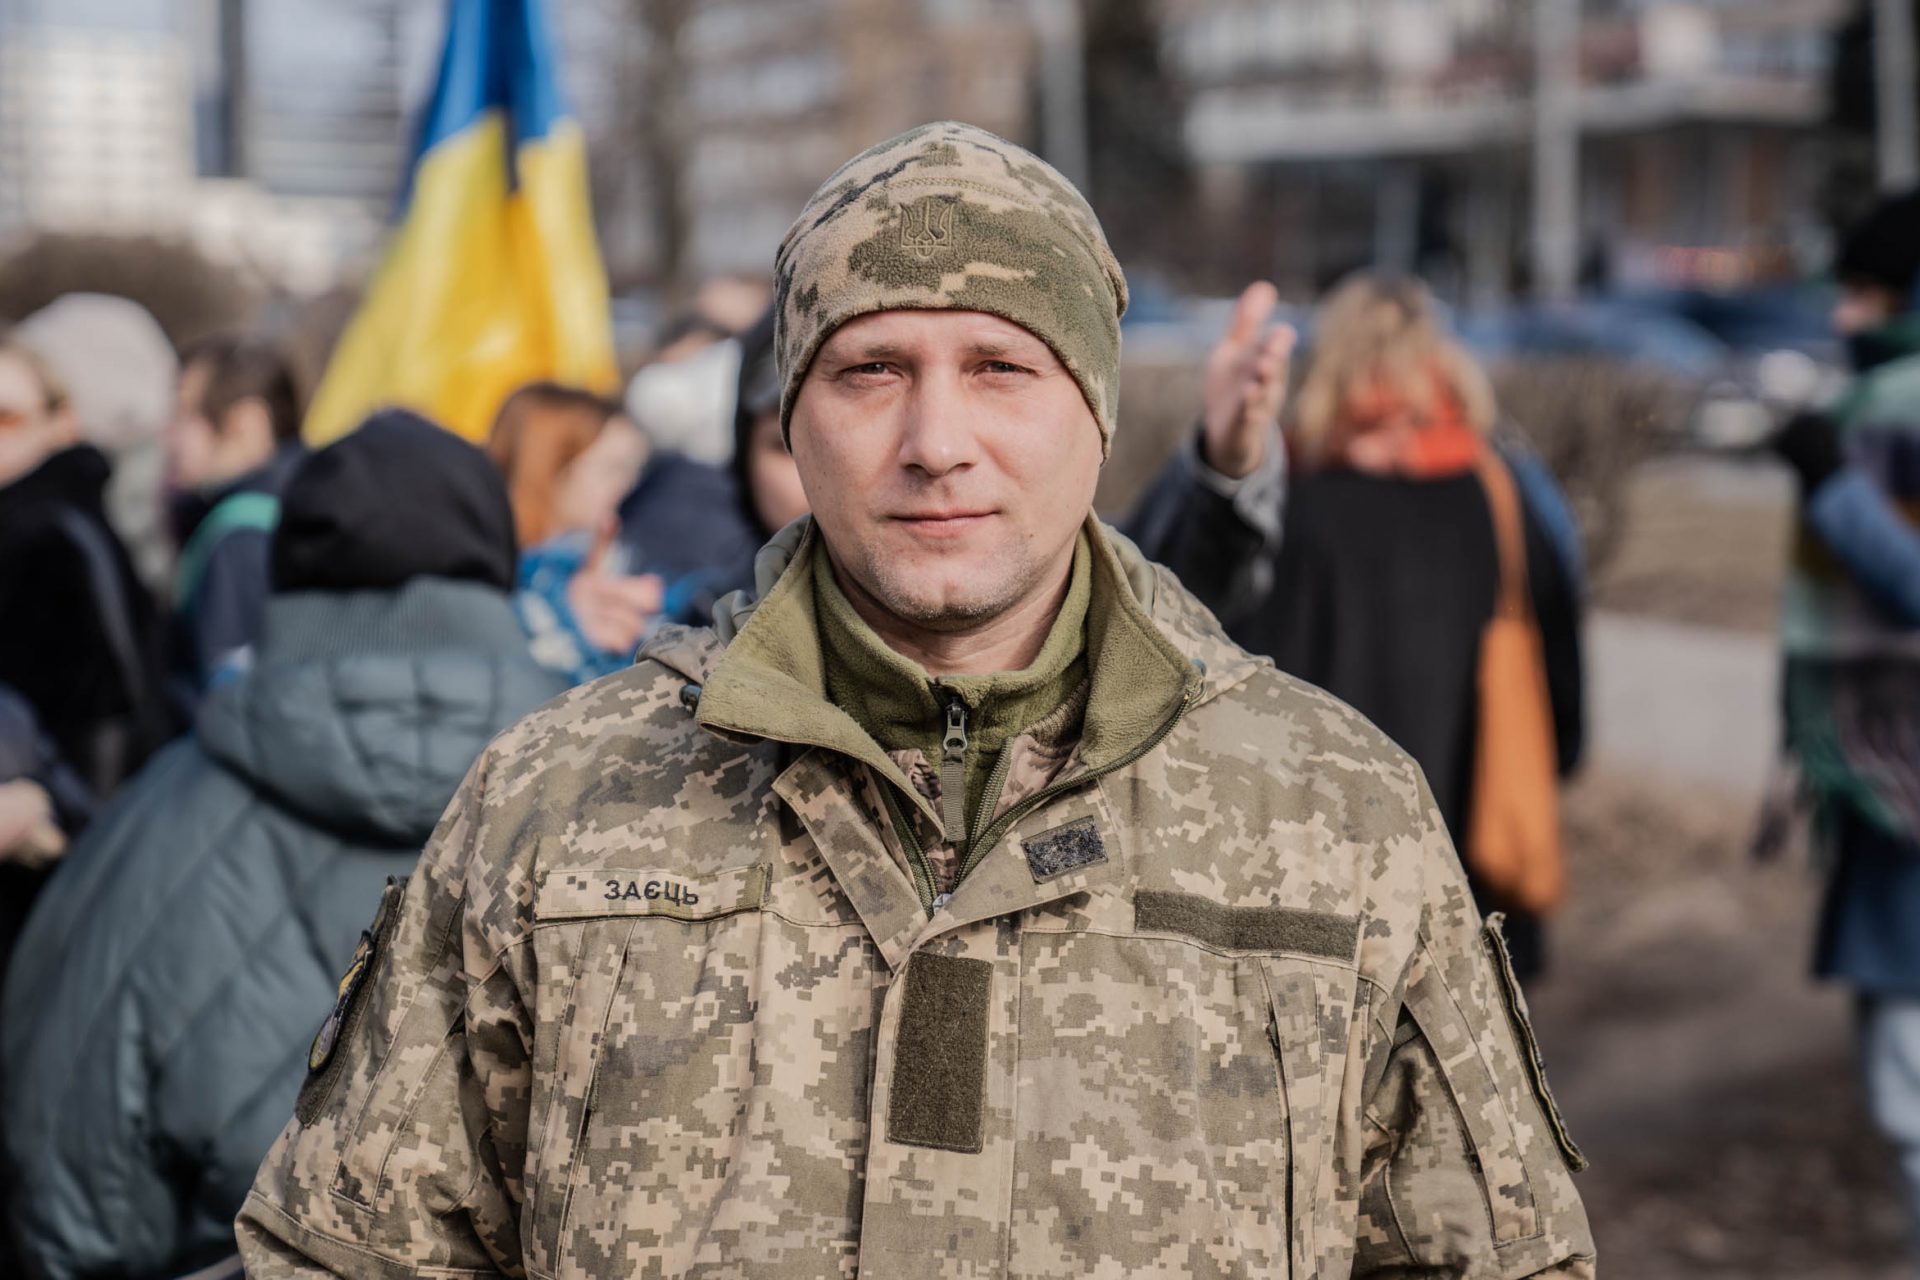 Ukraine has serious troop conscription problems